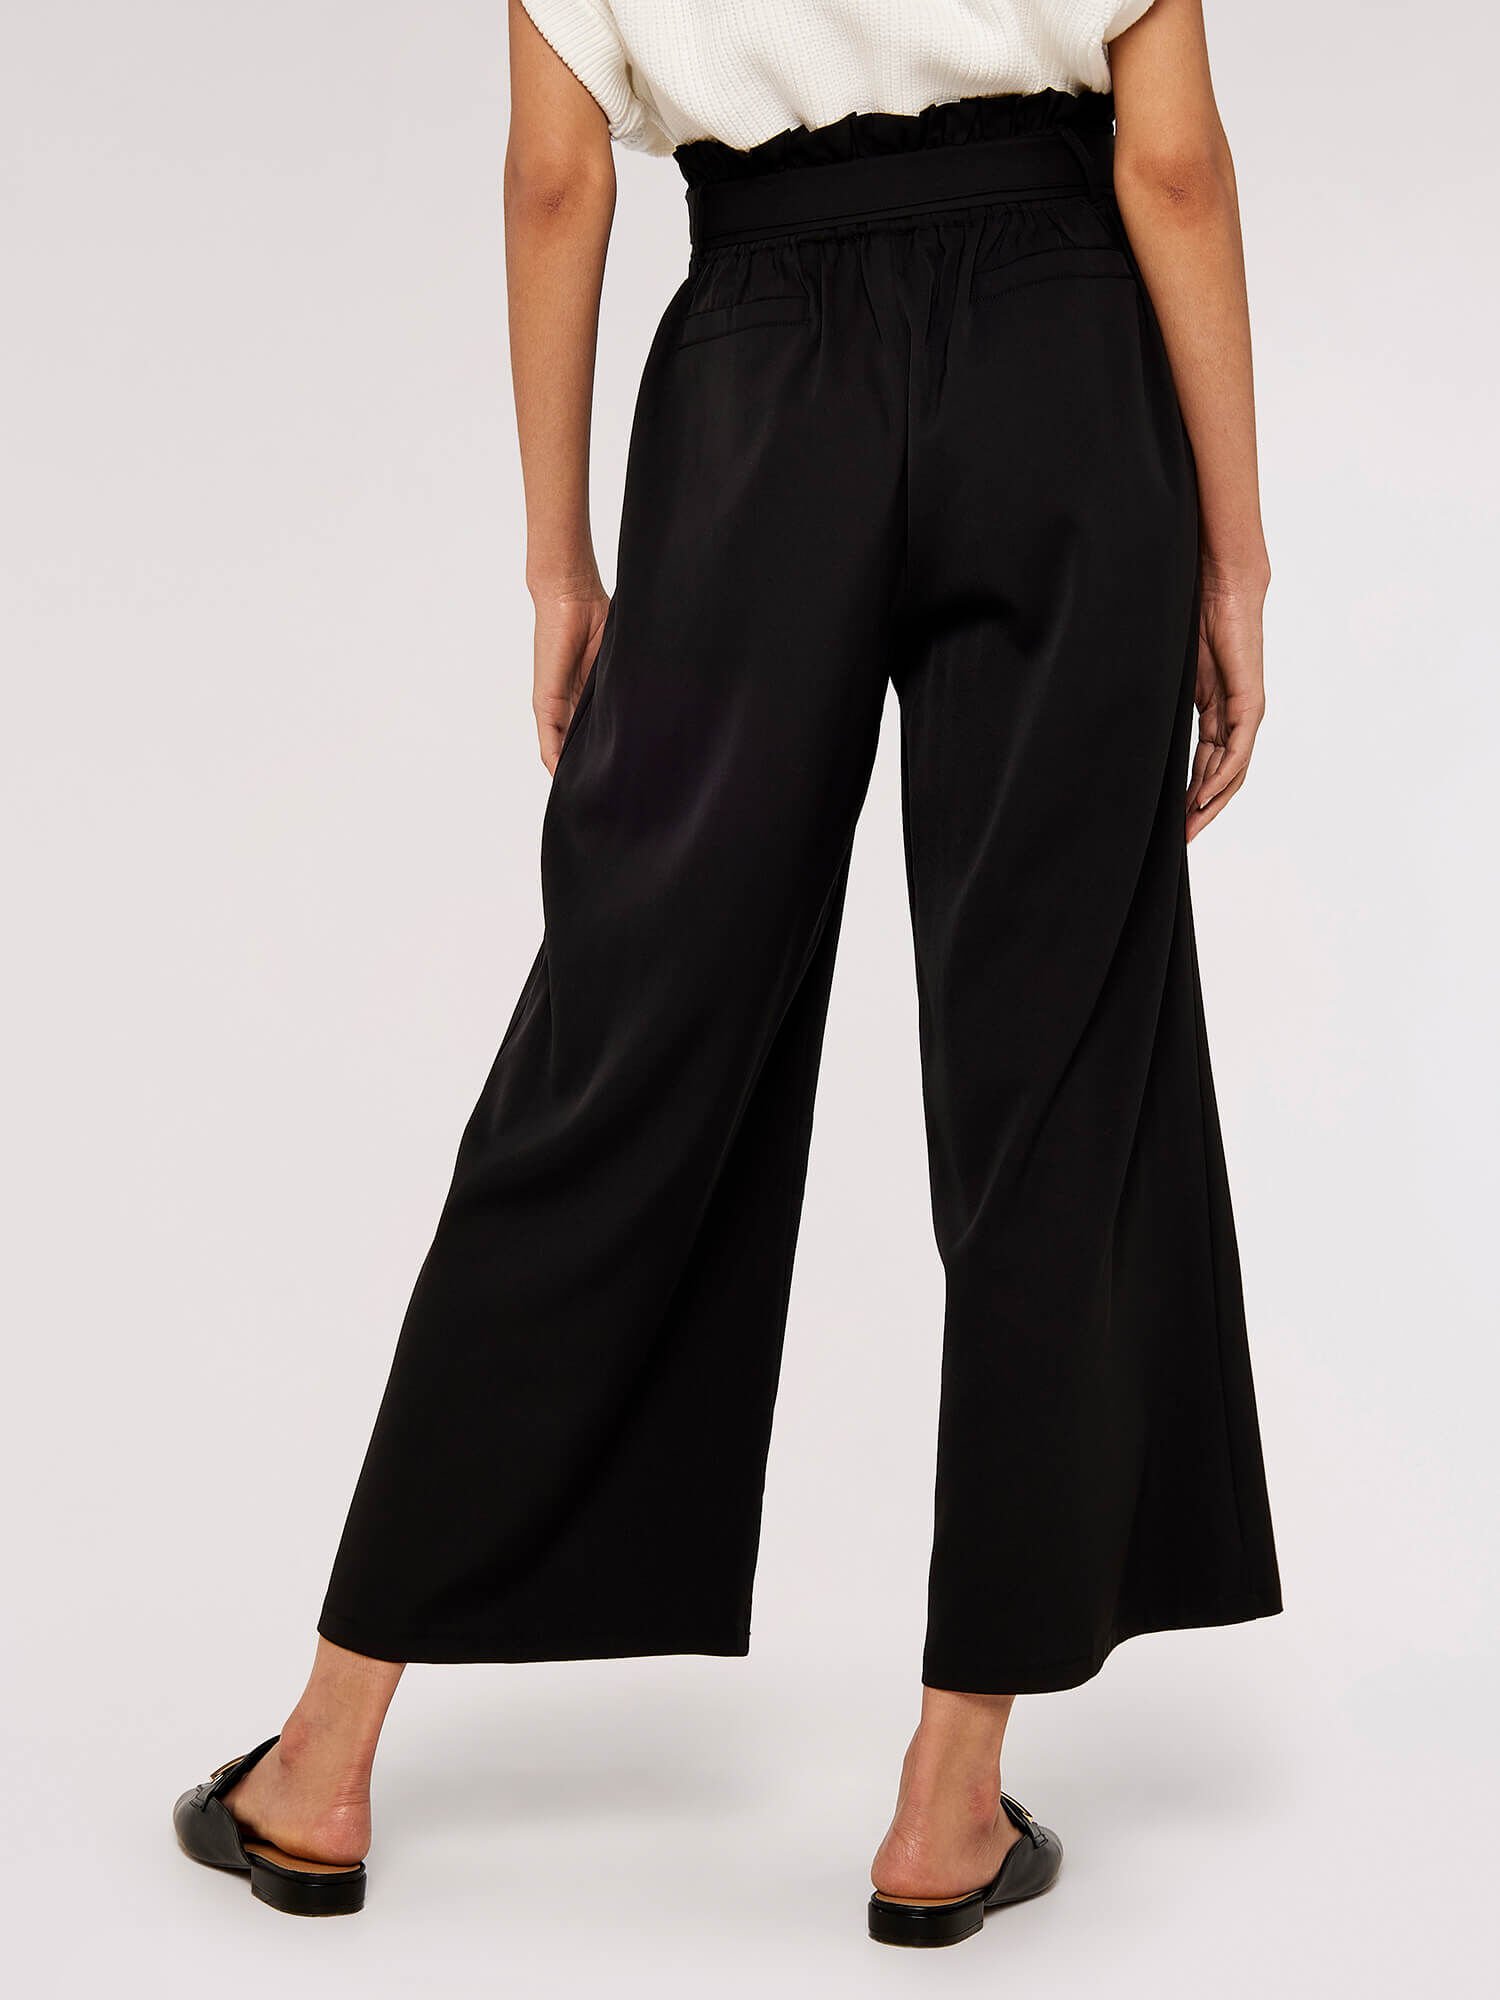 Jess Millichamp Black Tie Waist Wide Leg Trousers  In The Style